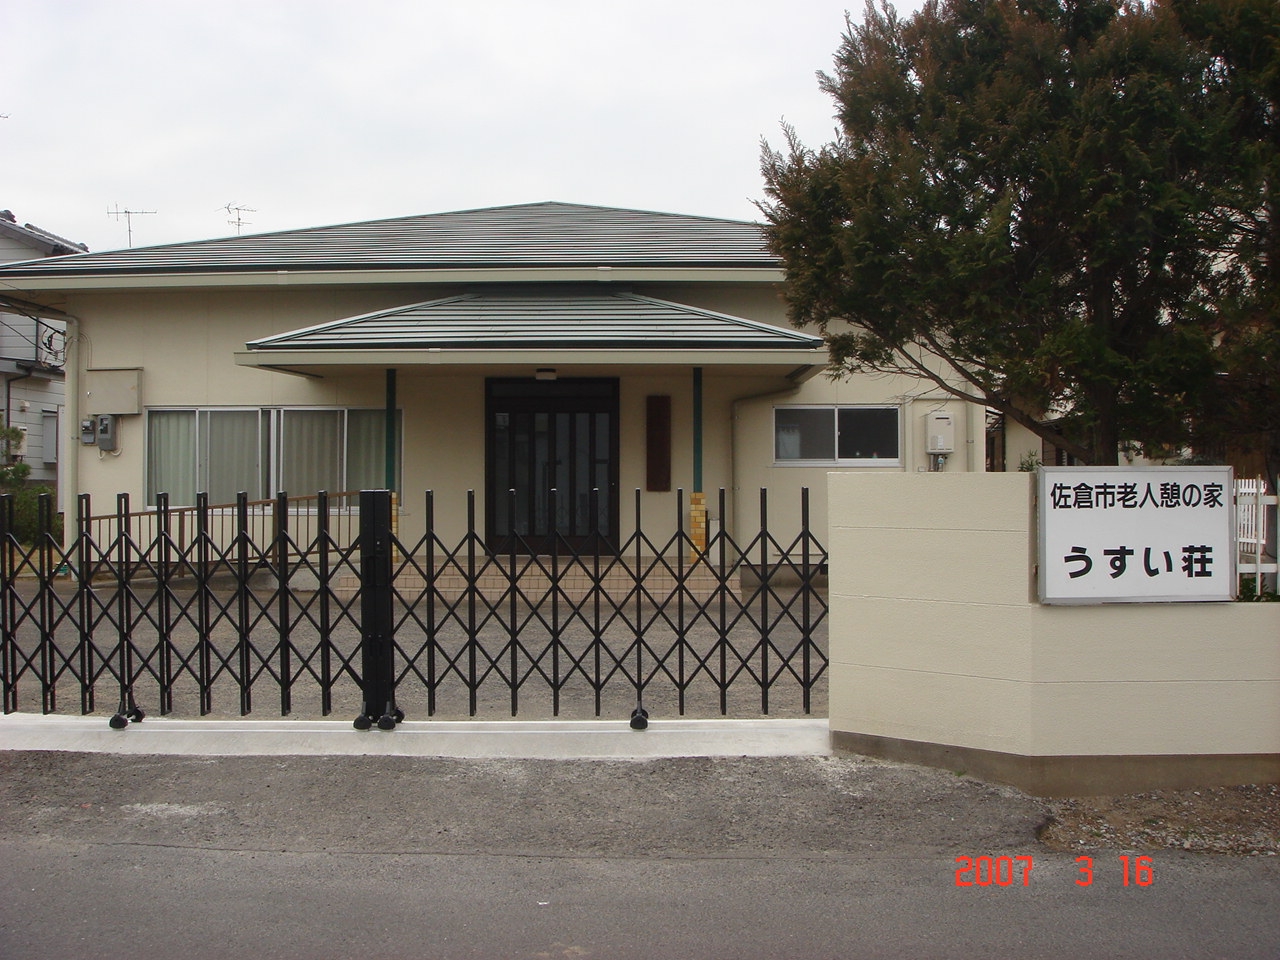 「佐倉市老人憩の家 うすい荘」と書かれた看板がある外壁がクリーム色の、うすい荘の写真